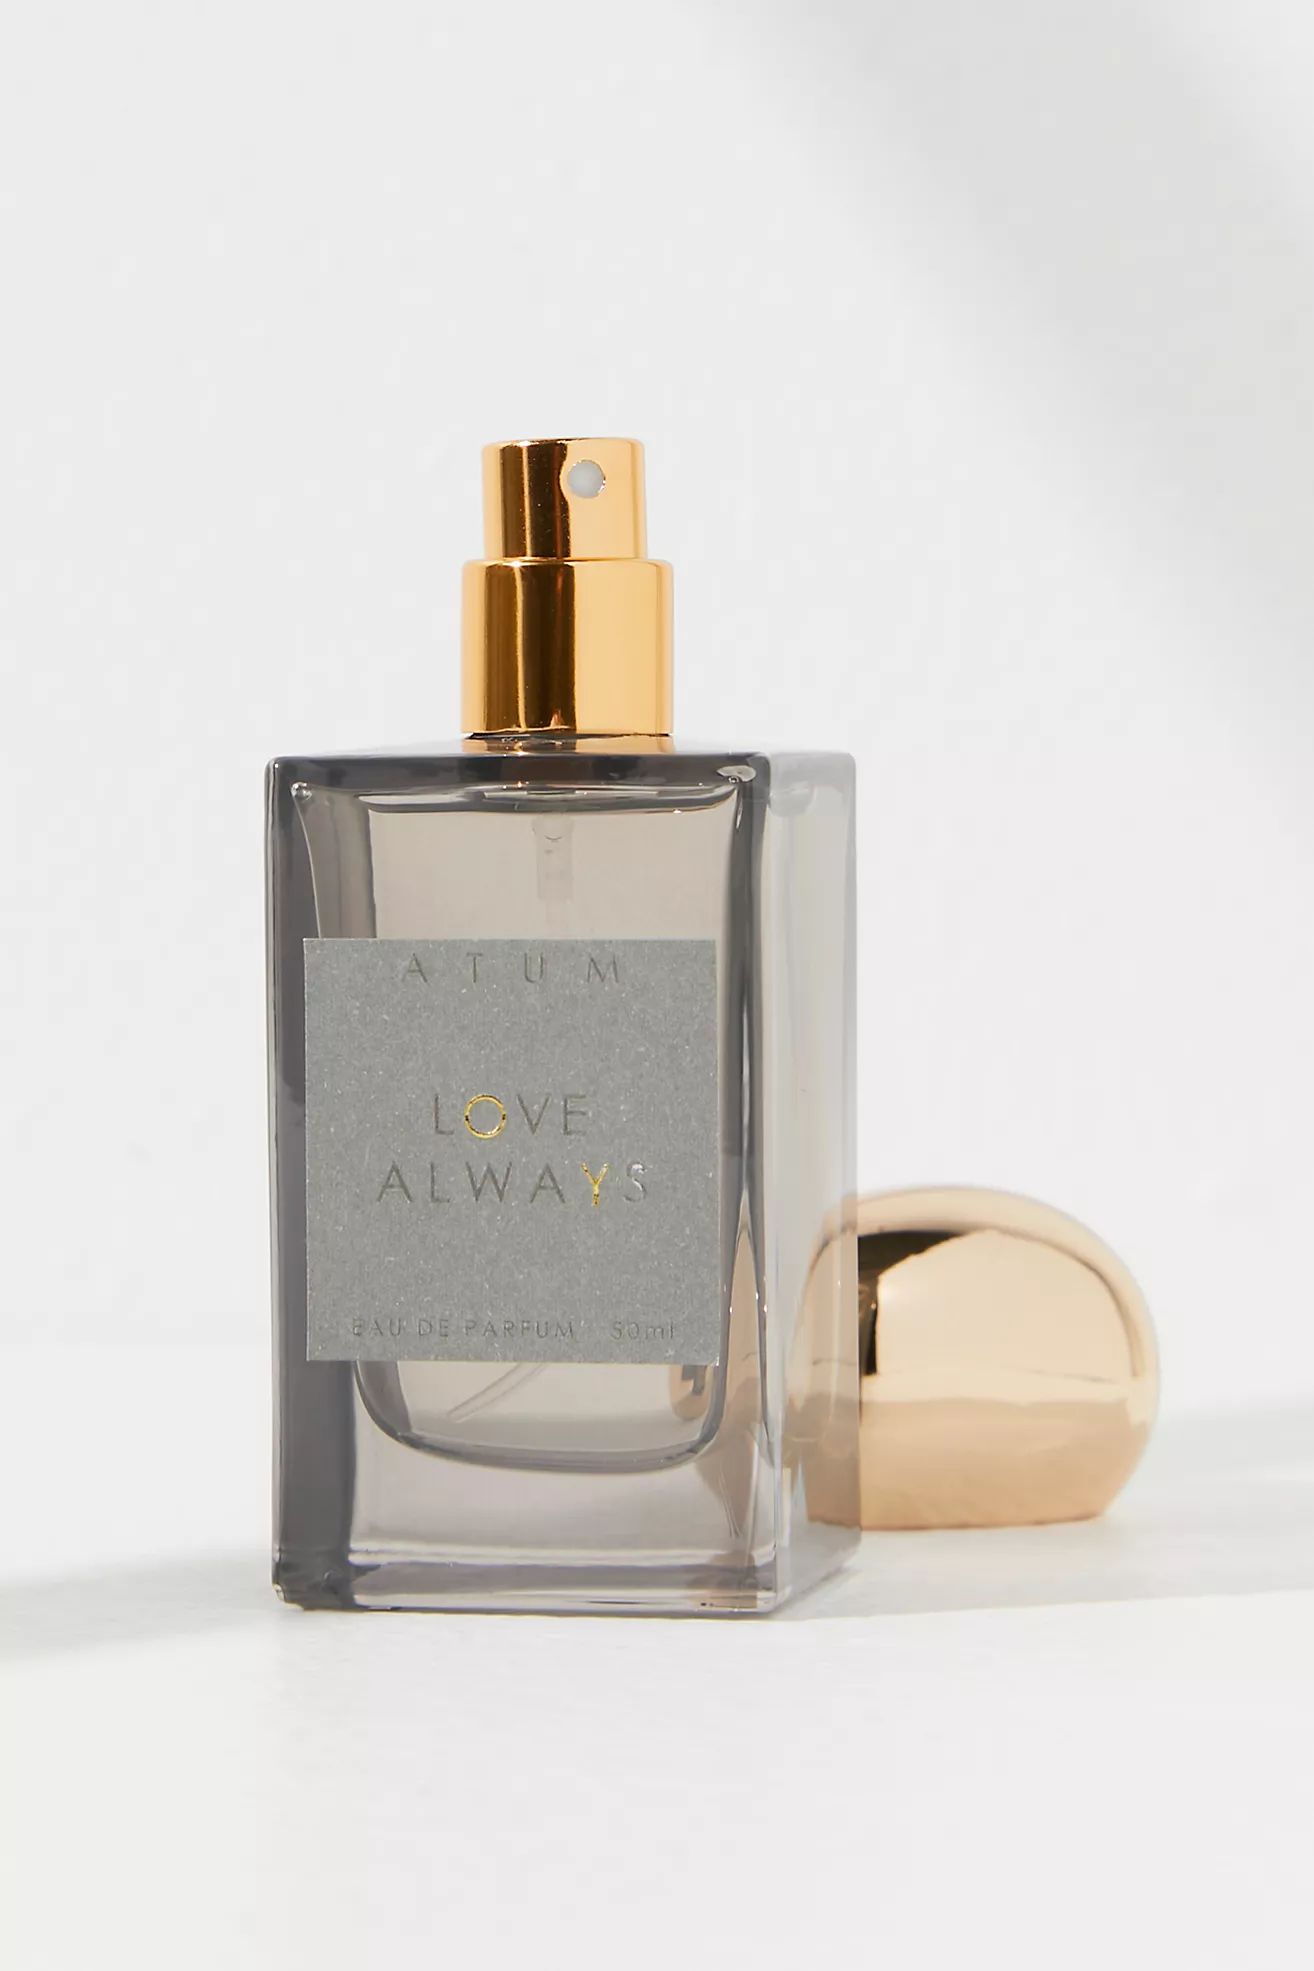 ATUM Love Always Eau De Parfum | Free People (Global - UK&FR Excluded)